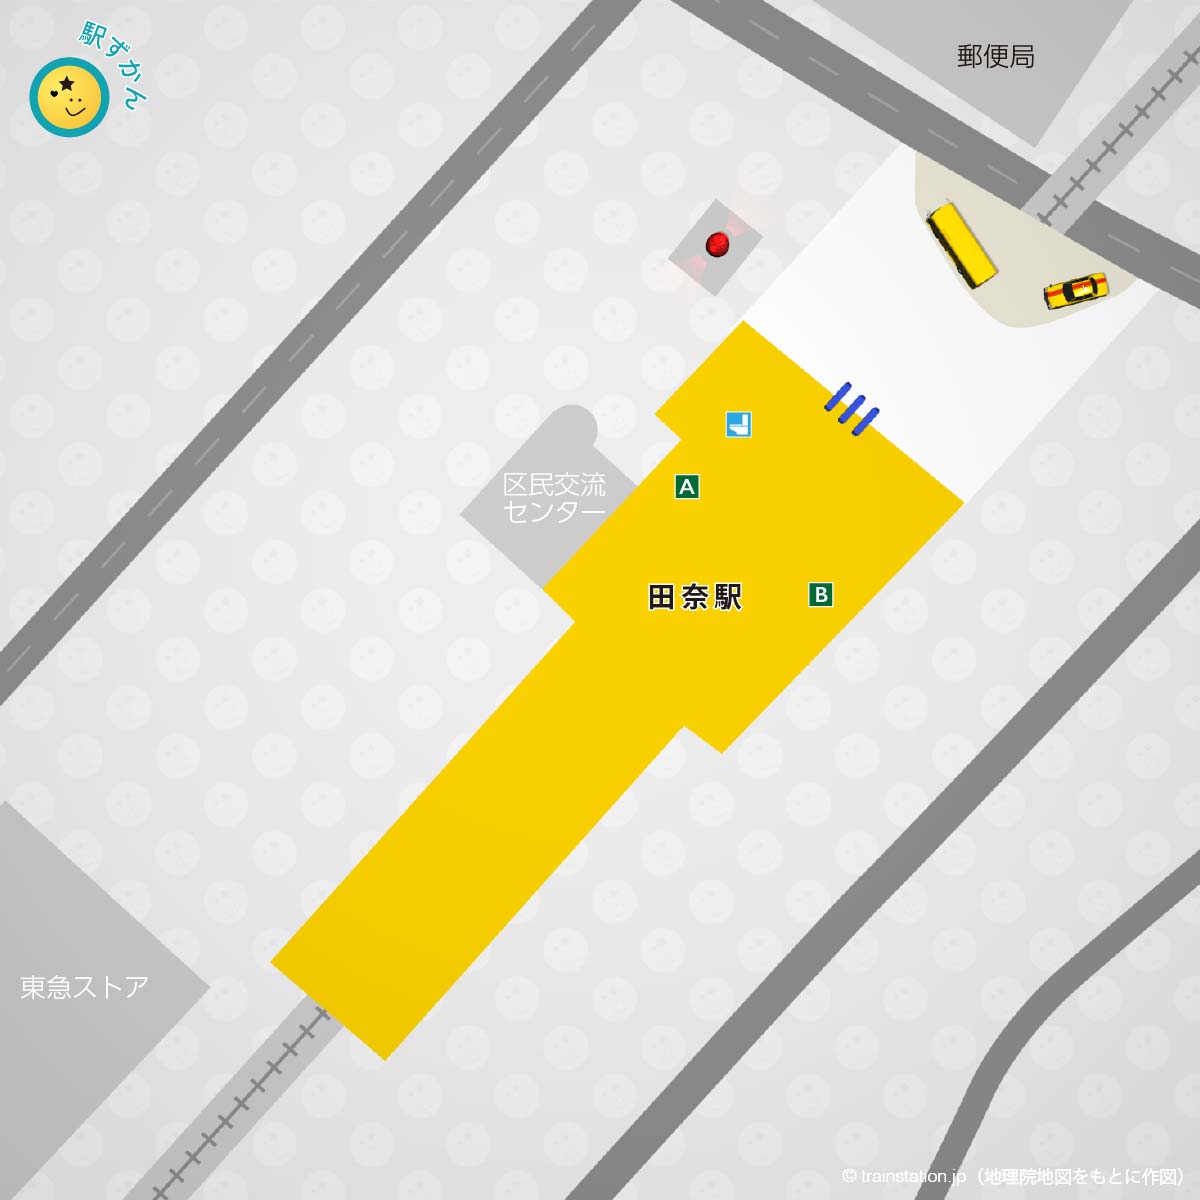 田奈駅構内図と周辺マップ